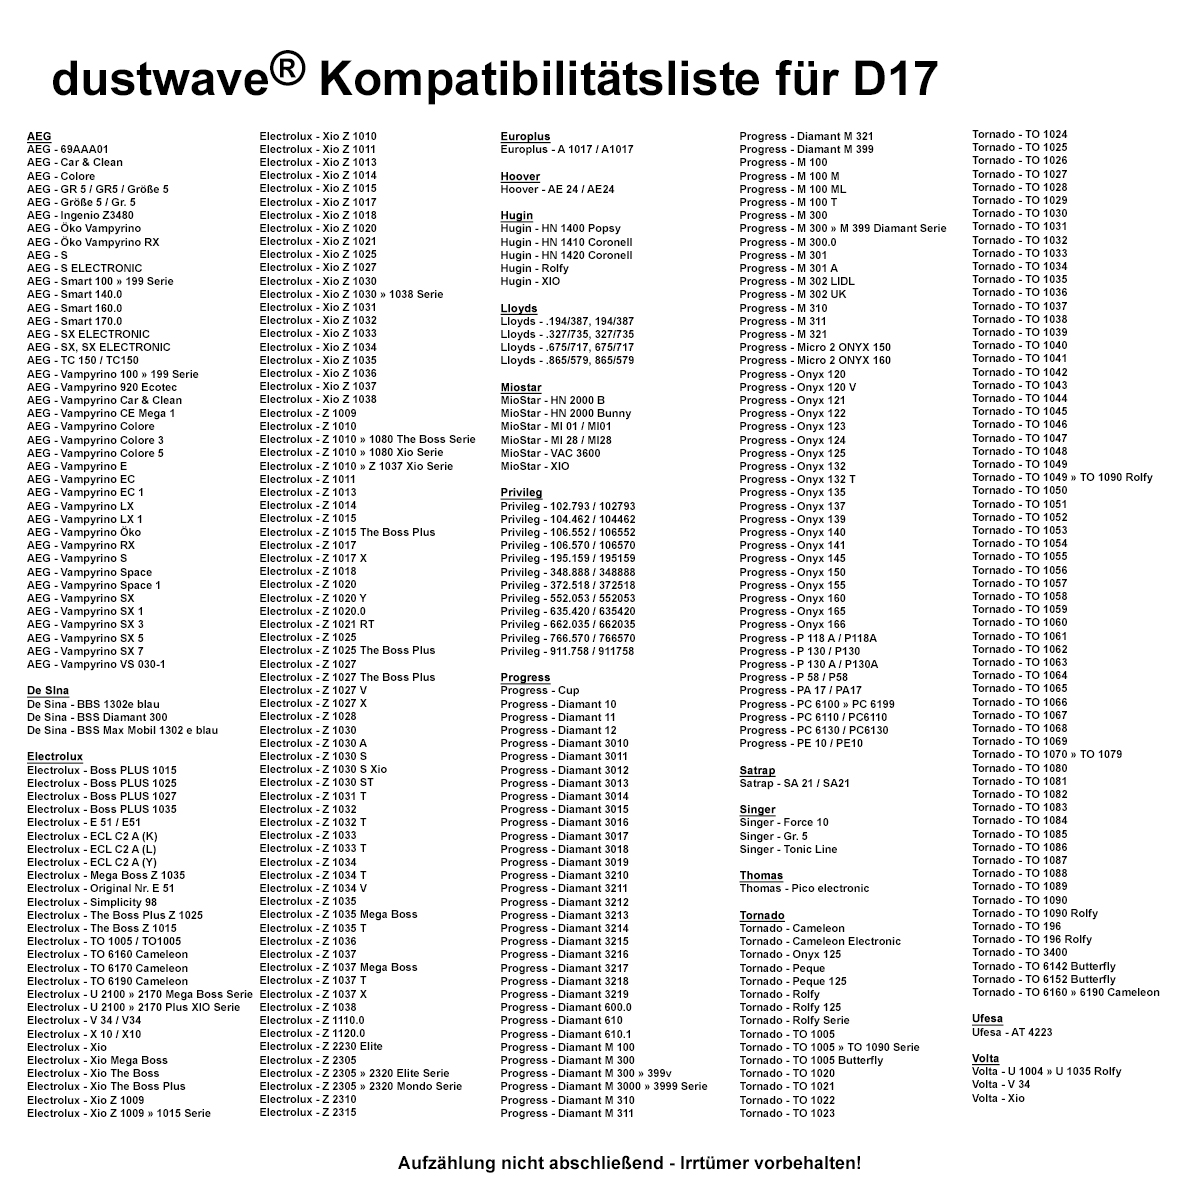 Dustwave® Premium 20 Staubsaugerbeutel für AEG GR5 / Größe 5 - hocheffizient mit Hygieneverschluss - Made in Germany